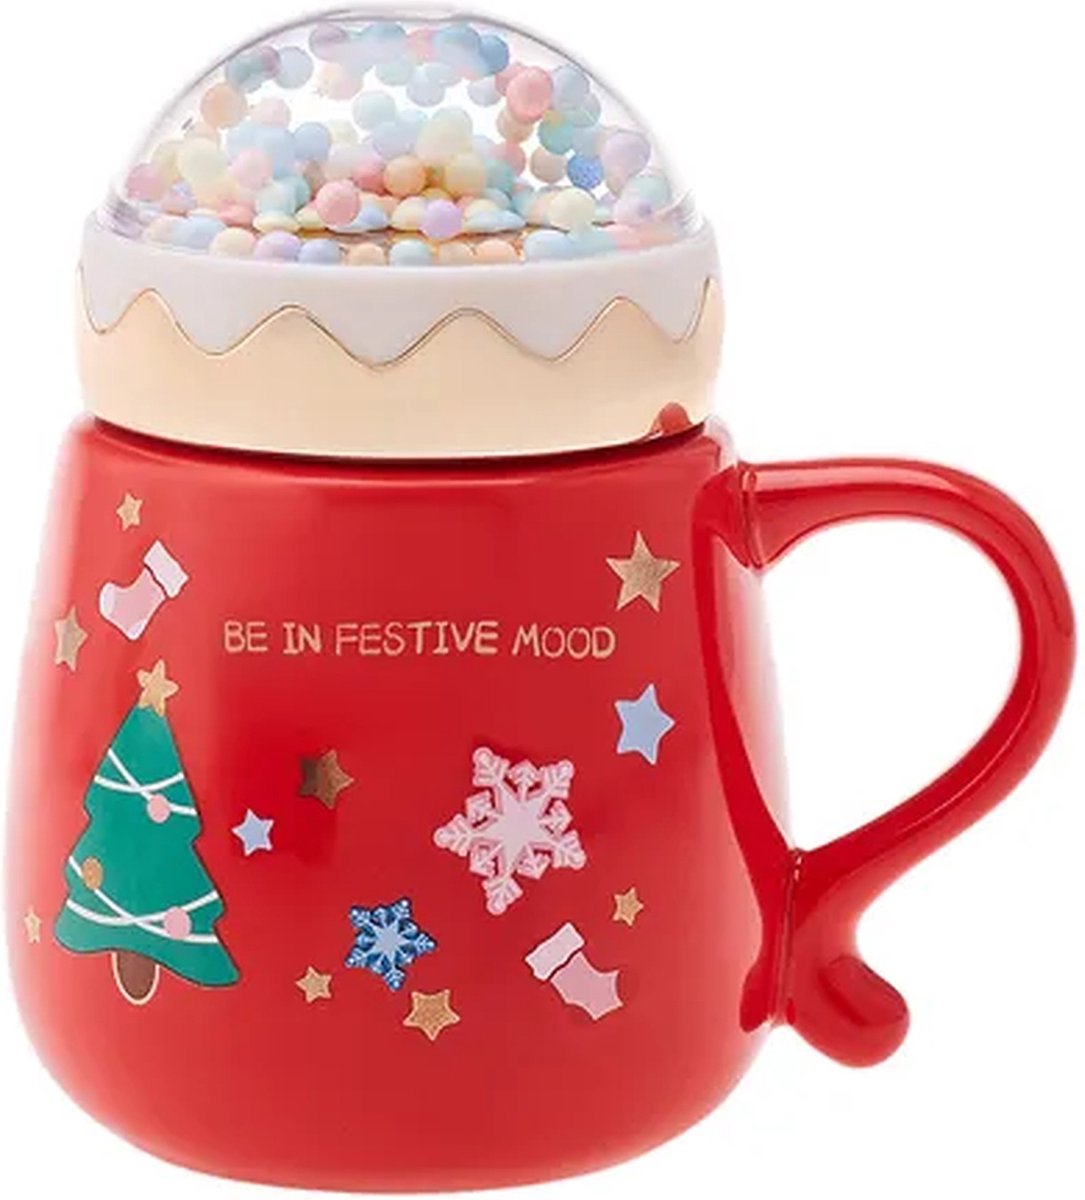 Kerstbeker - Sneeuwbol mok - Kersttafel - New year bubble mok - Rood - kerstmok 430 ml - Porselein beker - kerstcadeau - kerstboom - nieuwjaarscadeau